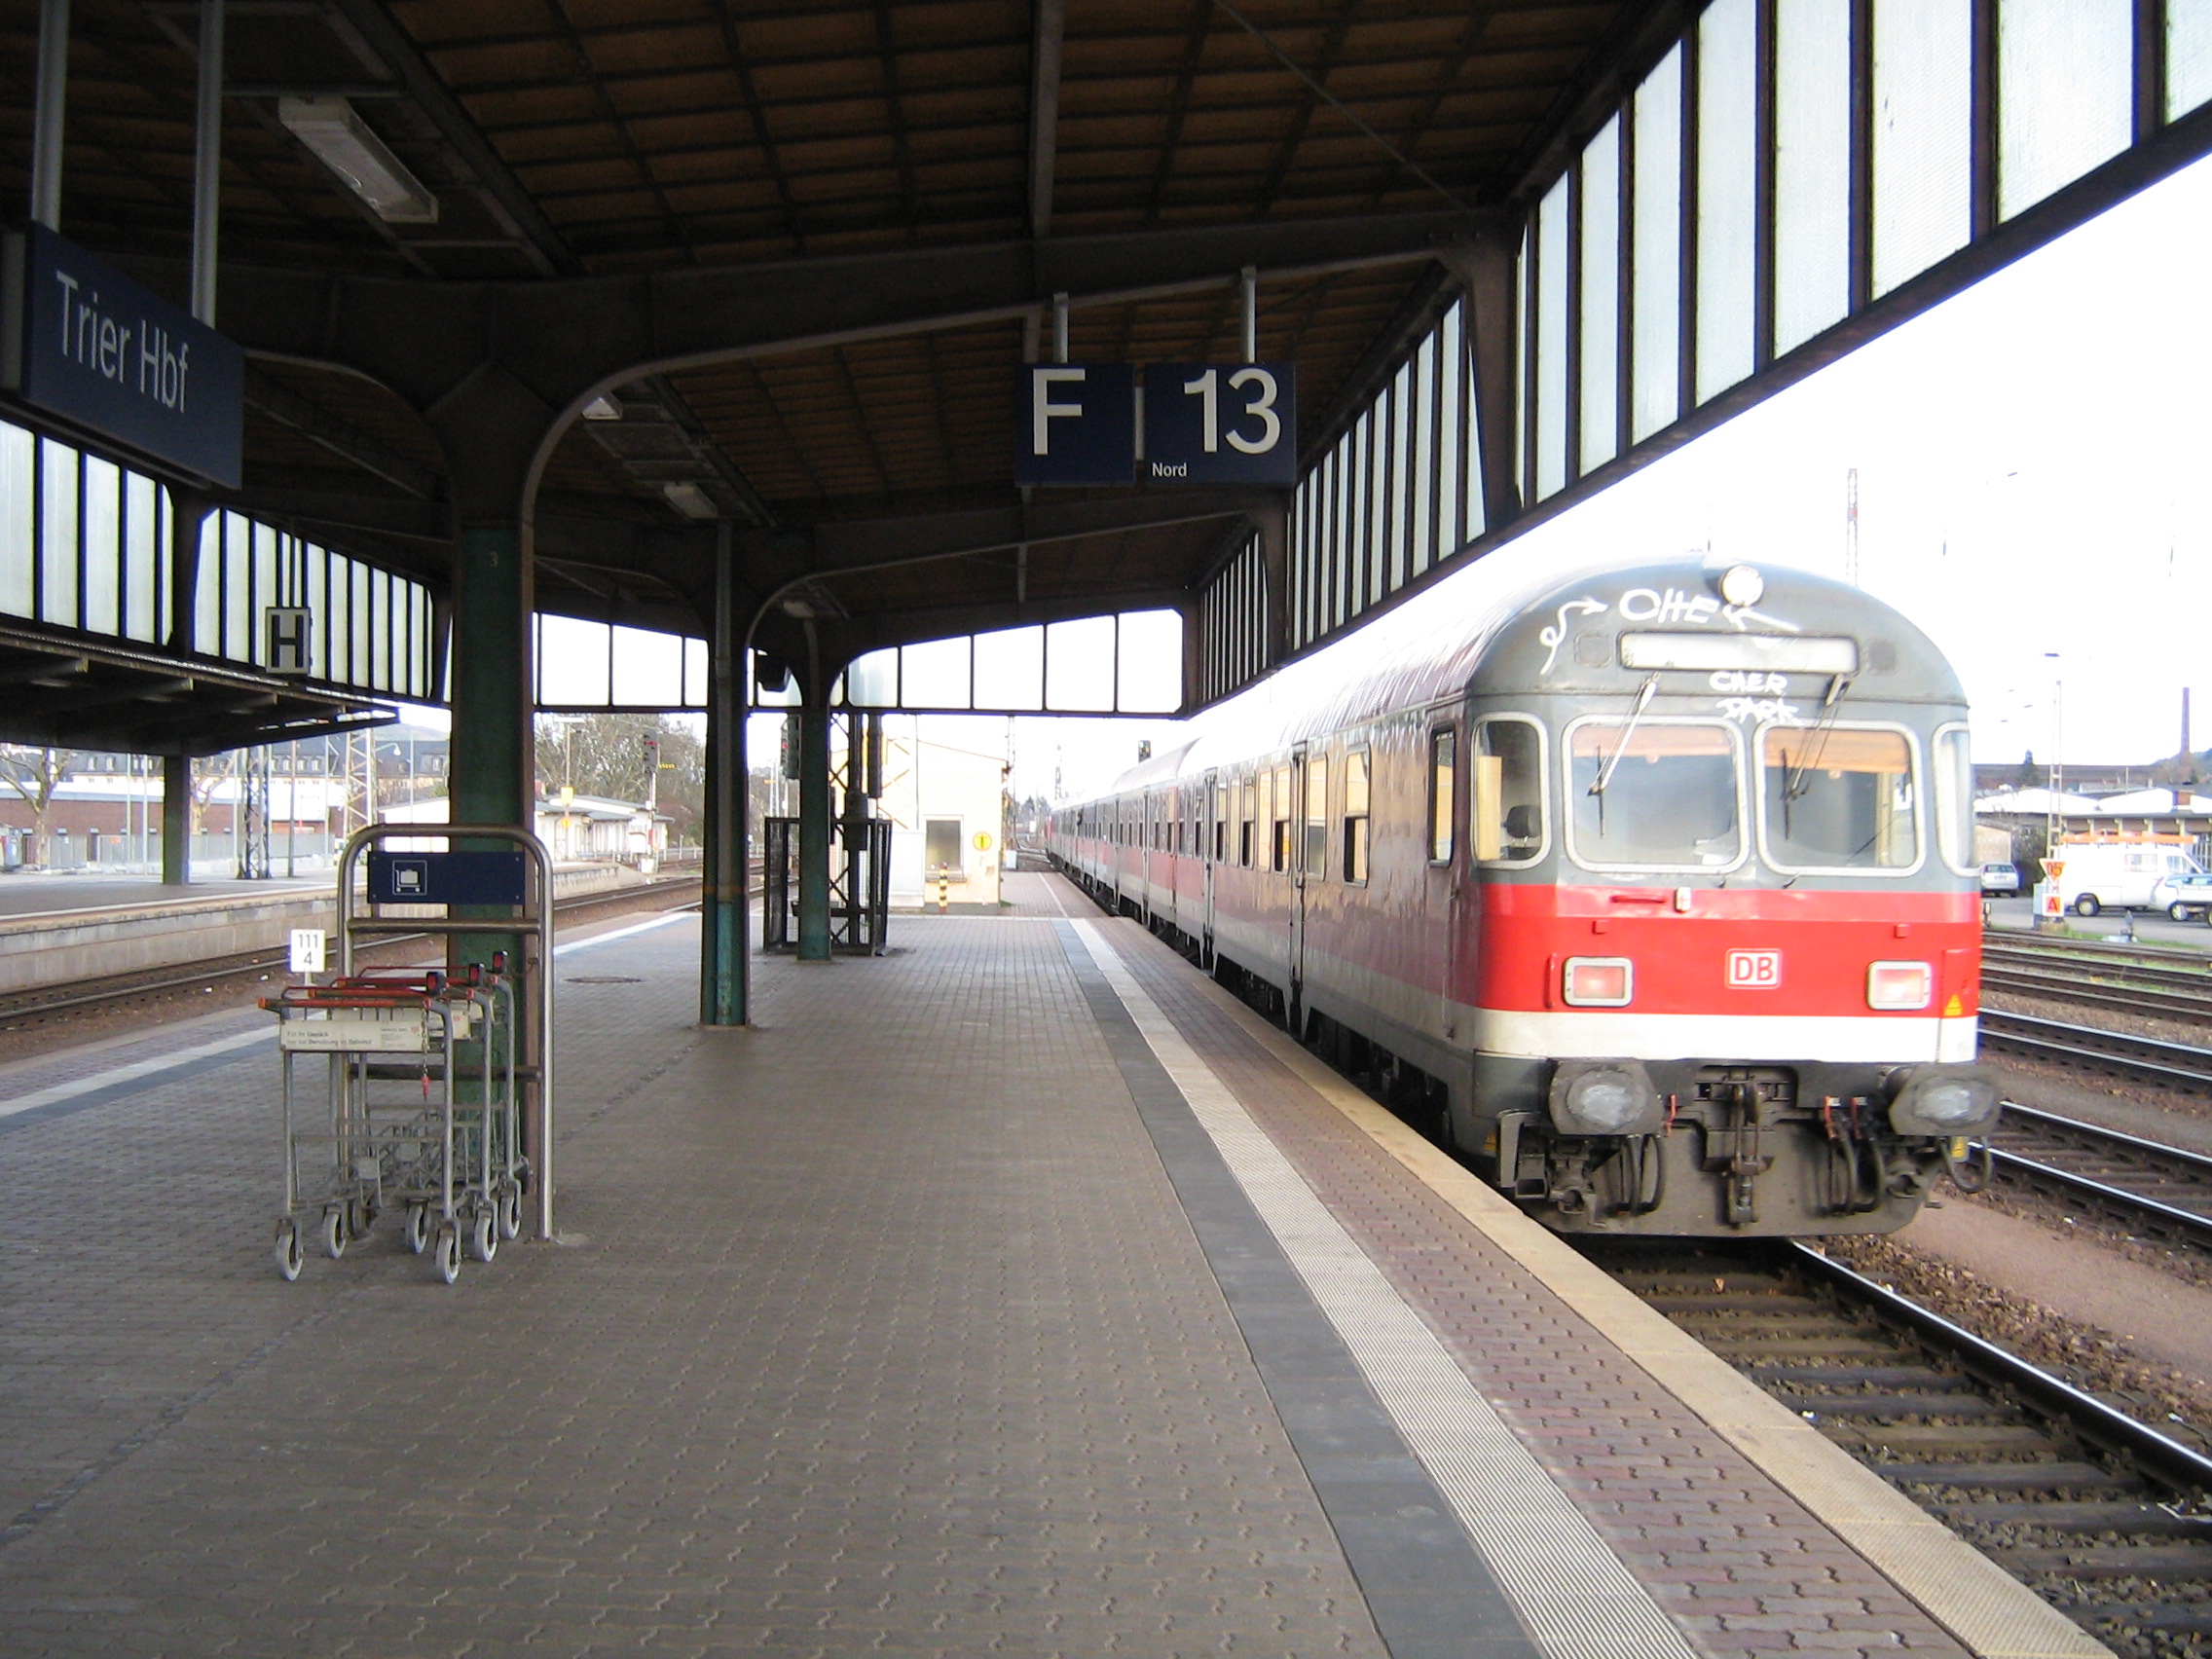 Ξεκινήστε τις προσφορές τώρα! Πωλείται σιδηροδρομικός σταθμός στη Βαυαρία